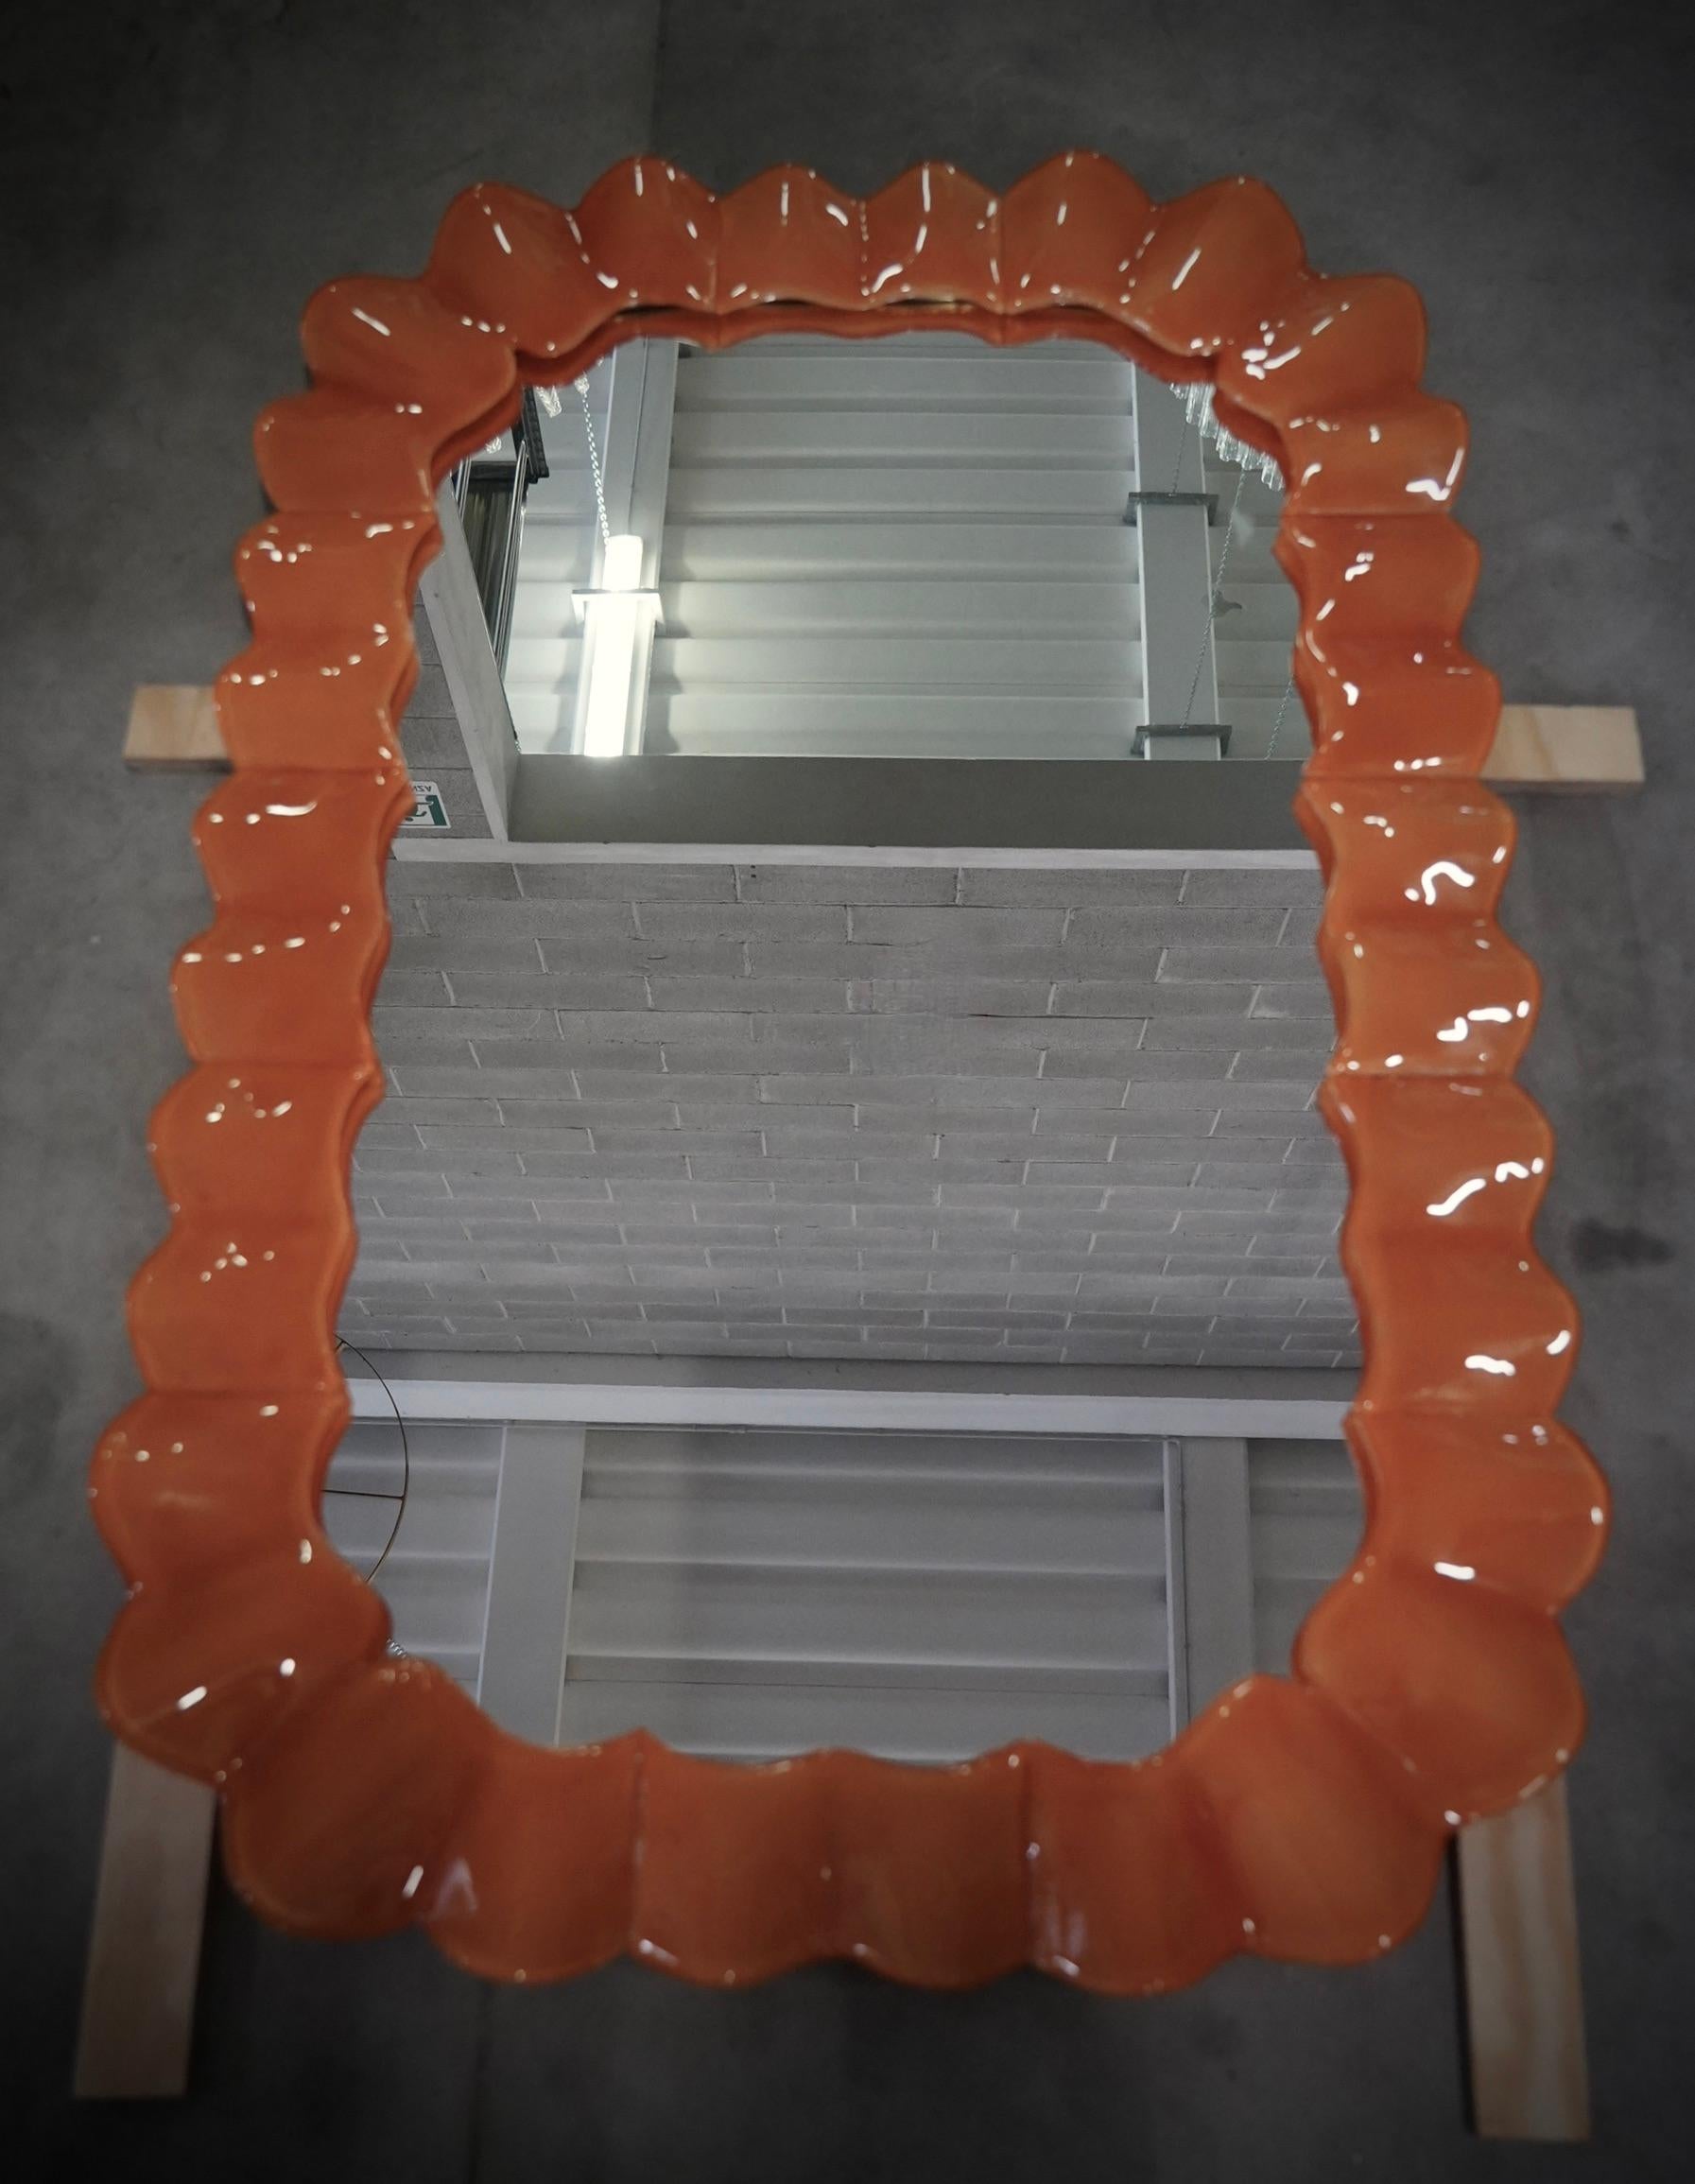 Magnifique miroir en verre de Murano de couleur orange vif. Un miroir qui, à lui seul, meublera votre environnement domestique. Riche mais de bon goût, le miroir présente un design vraiment particulier, avec une très belle forme de ces sections de